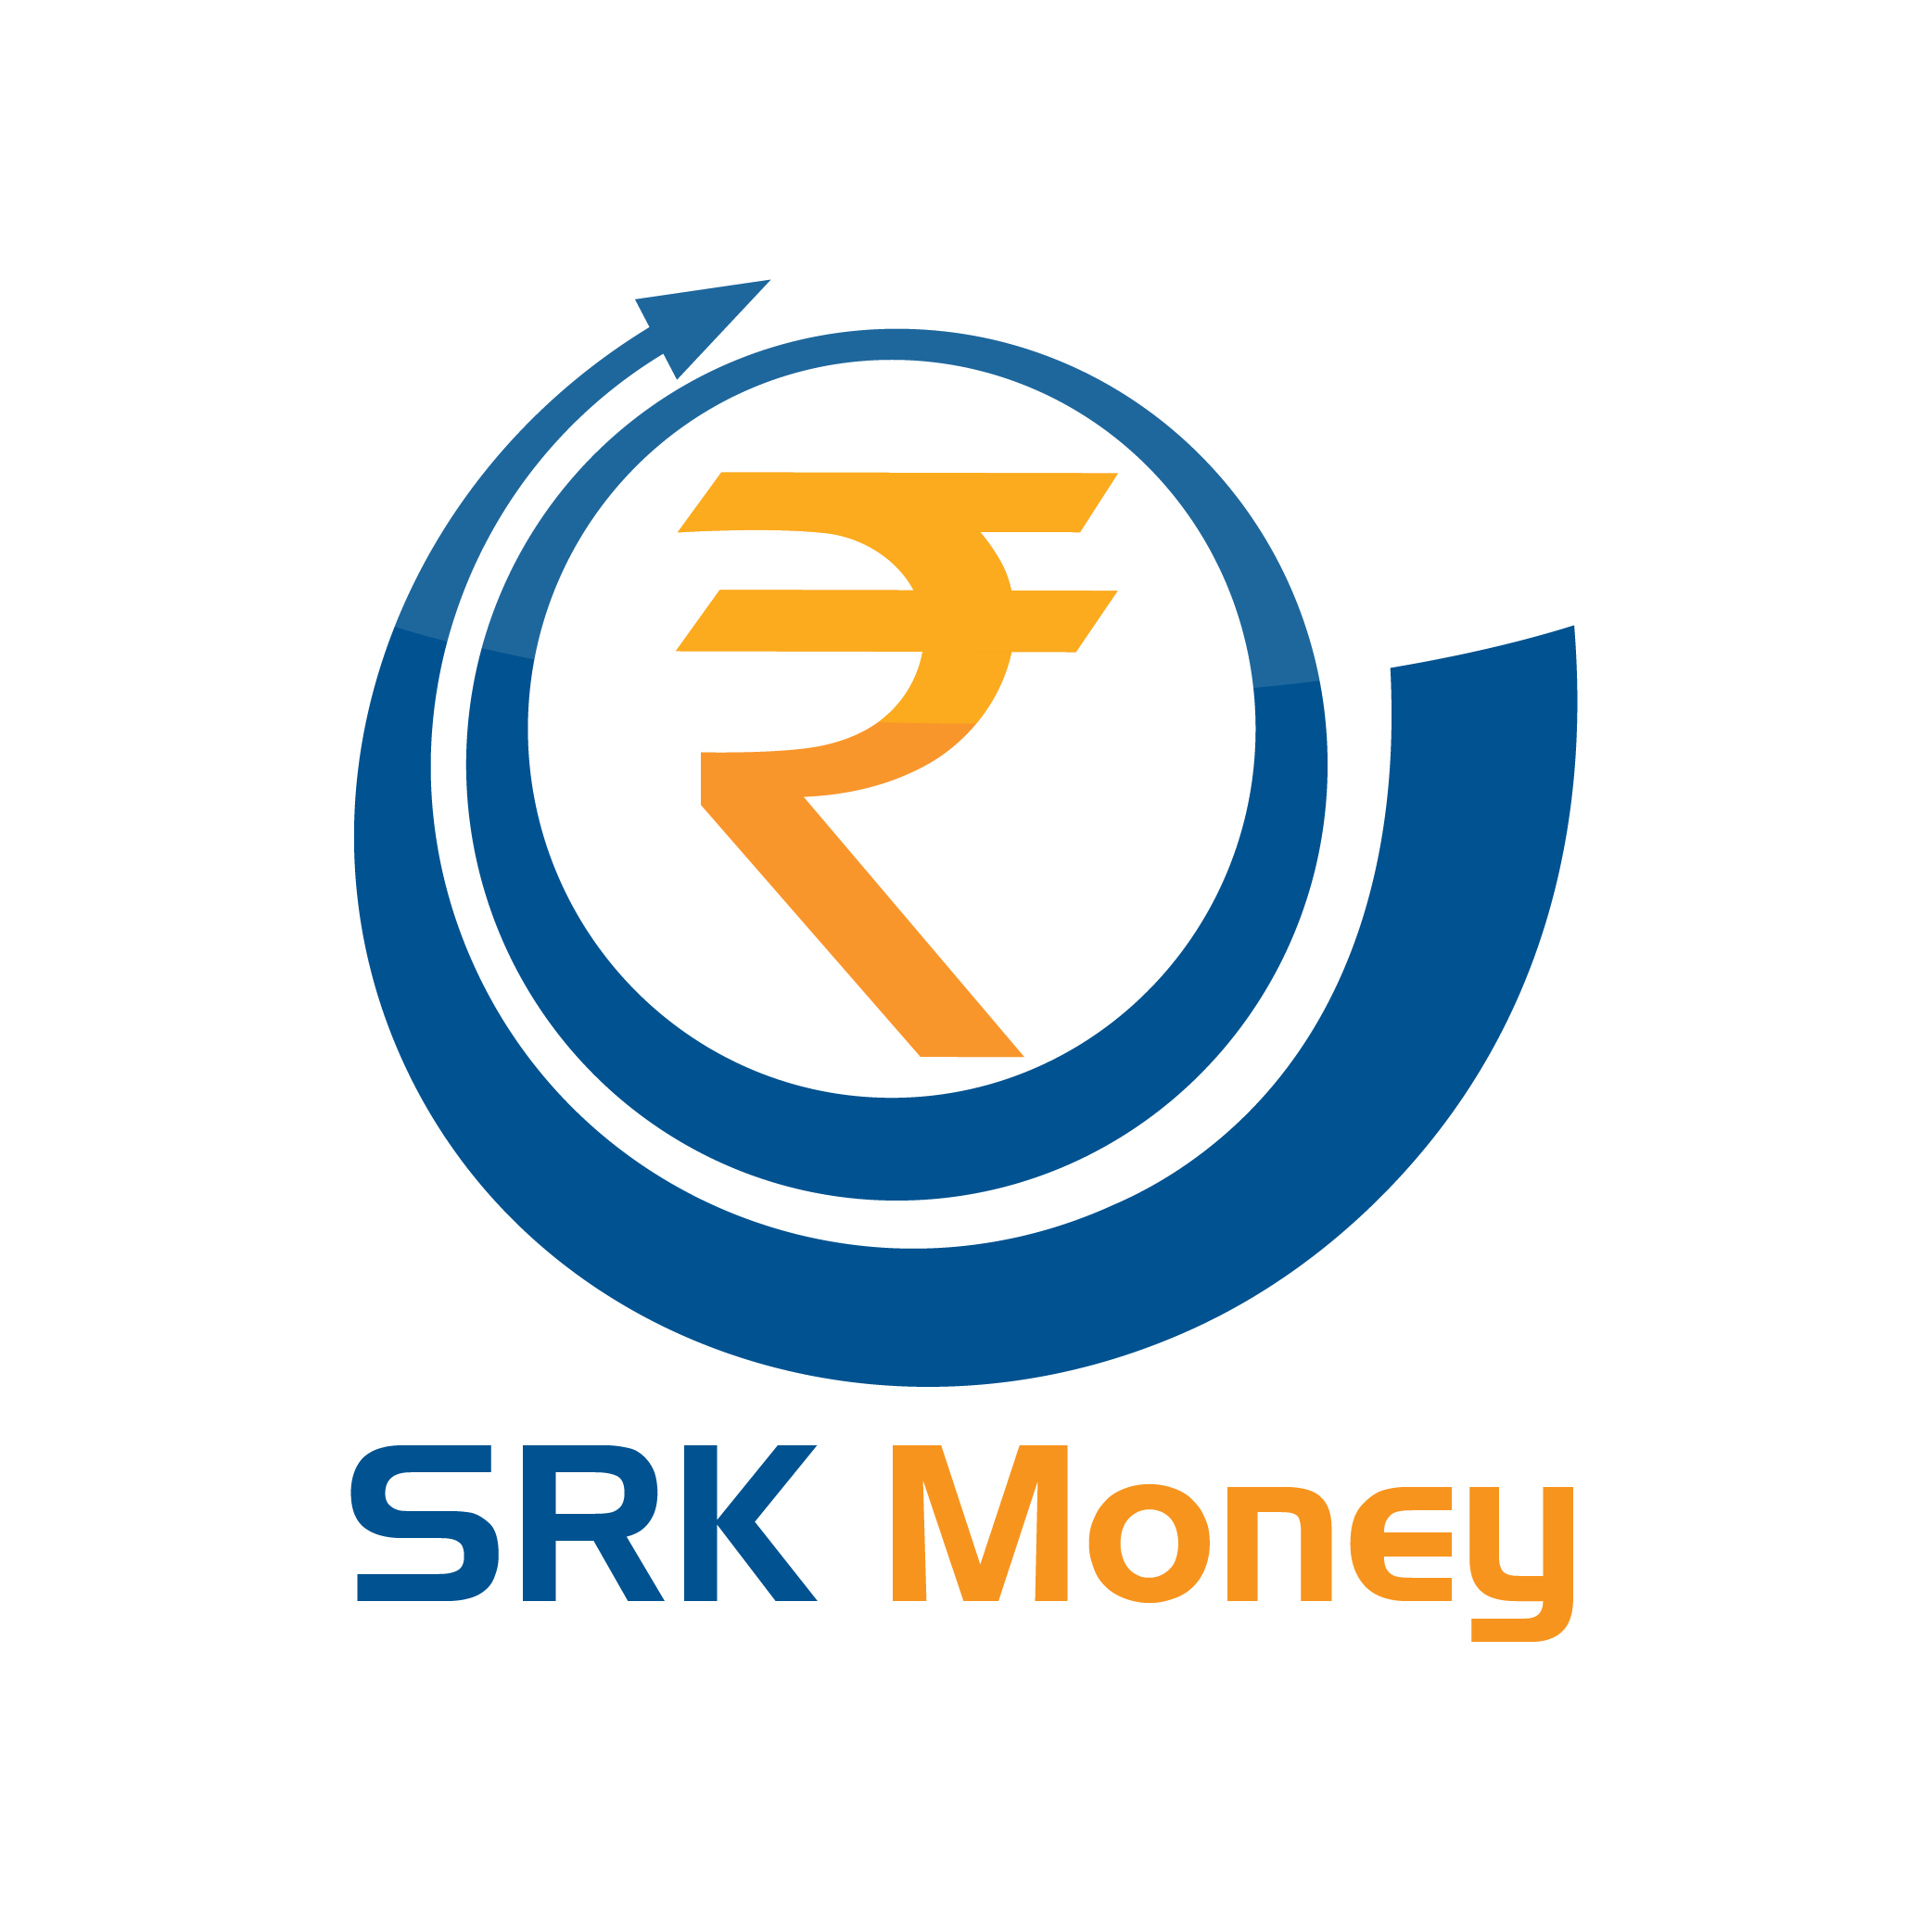 srk money logo